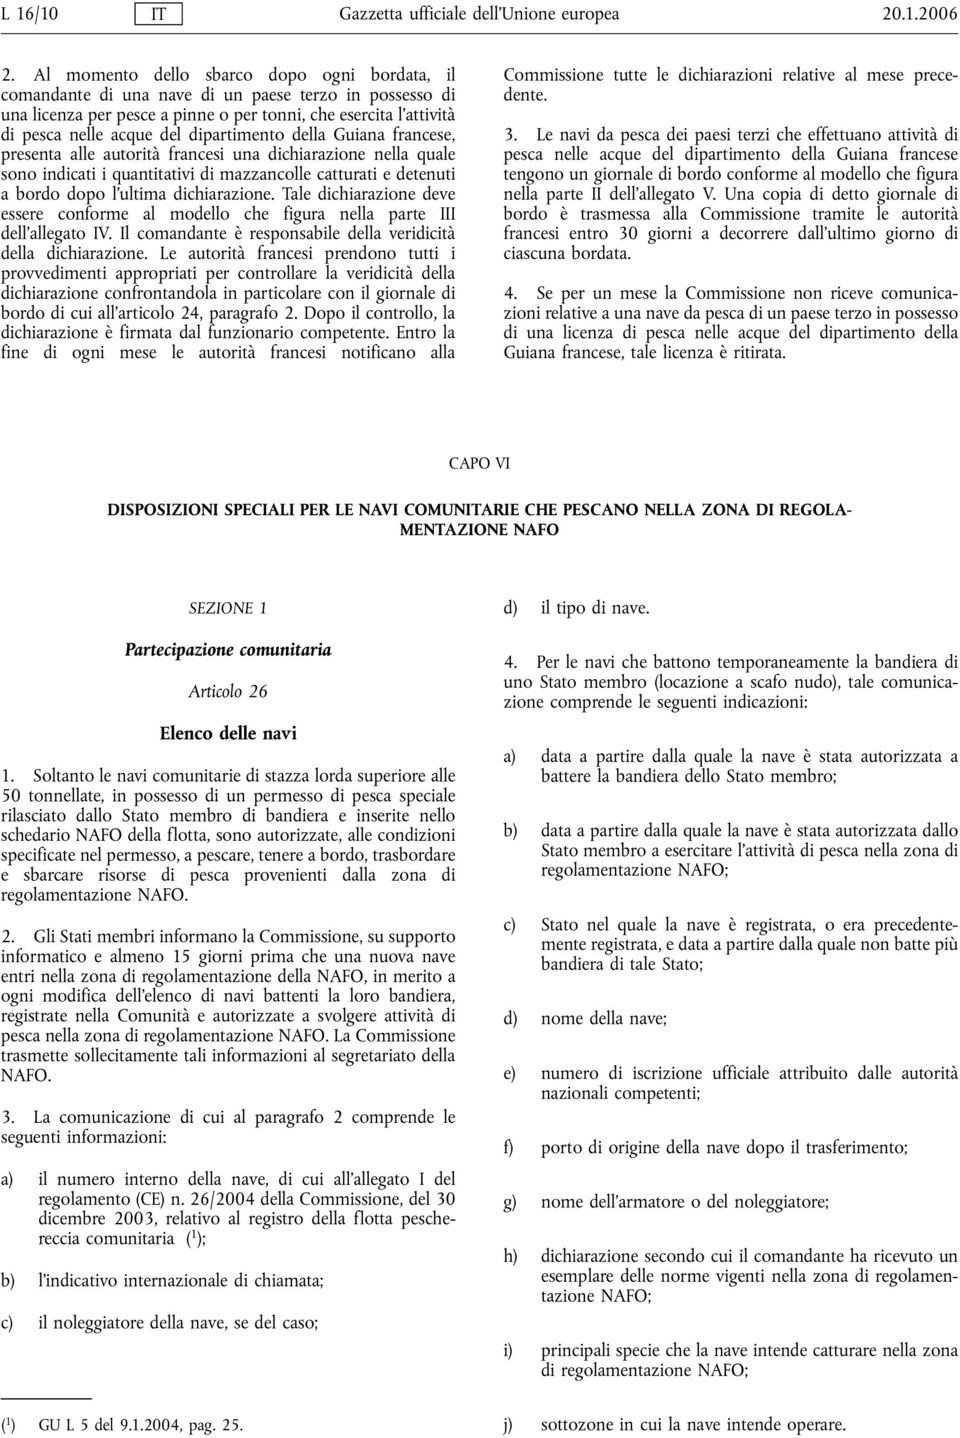 dipartimento della Guiana francese, presenta alle autorità francesi una dichiarazione nella quale sono indicati i quantitativi di mazzancolle catturati e detenuti a bordo dopo l'ultima dichiarazione.